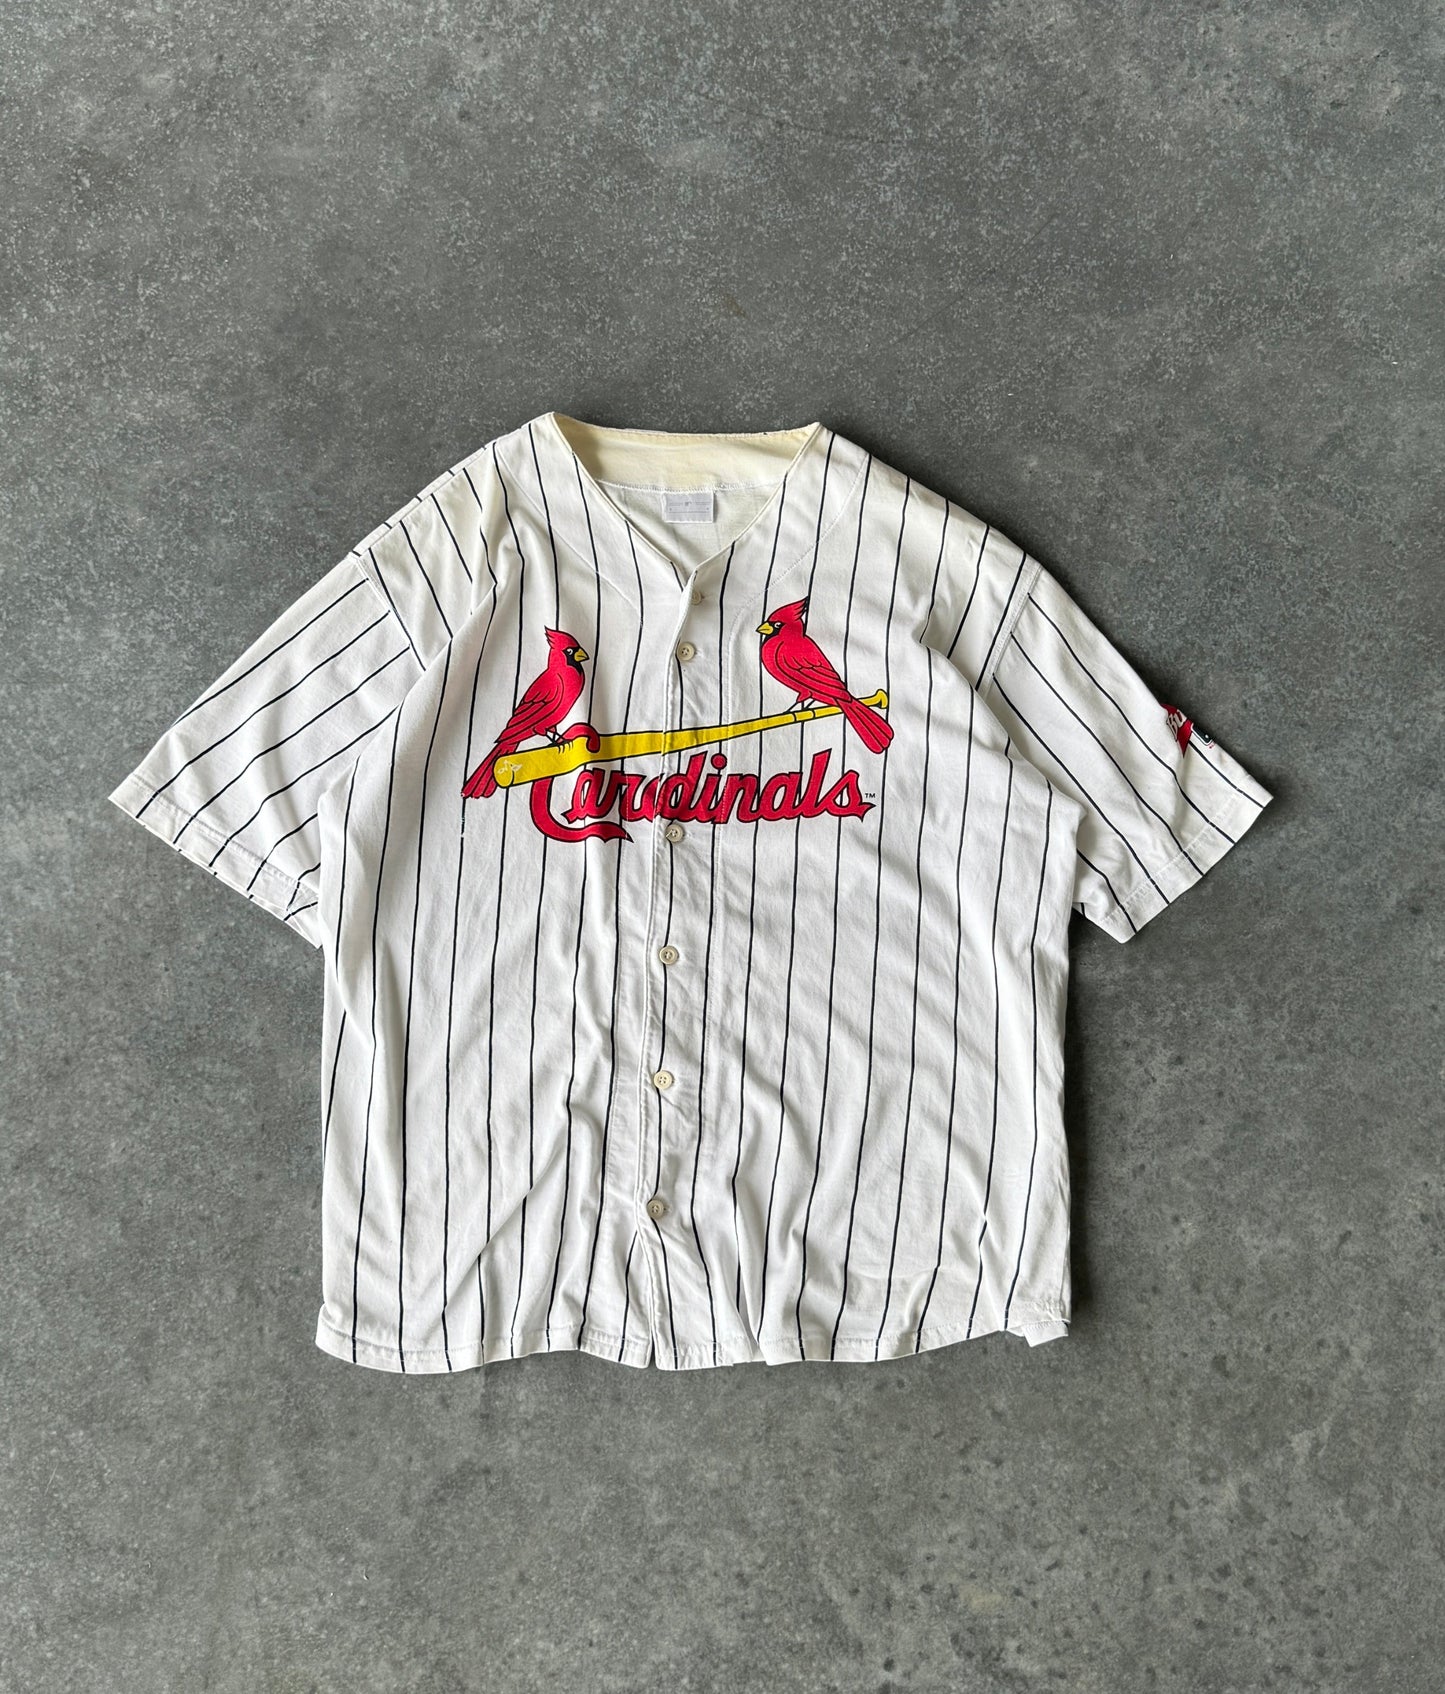 Vintage 90s Cardinals x Budweiser Baseball Shirt (L)